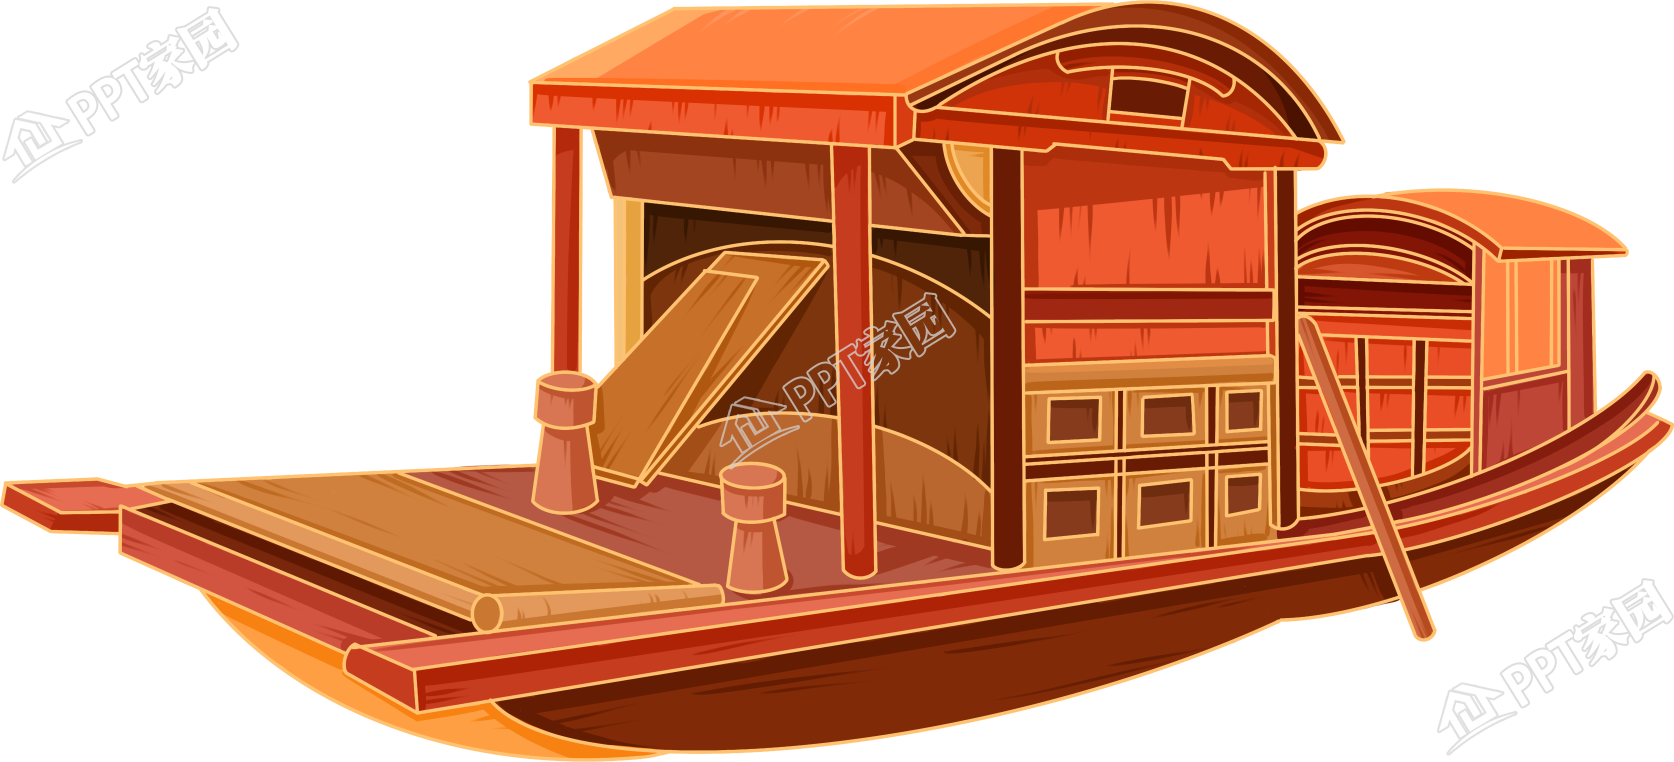 手绘插画风格红色木船交通运输素材下载推荐